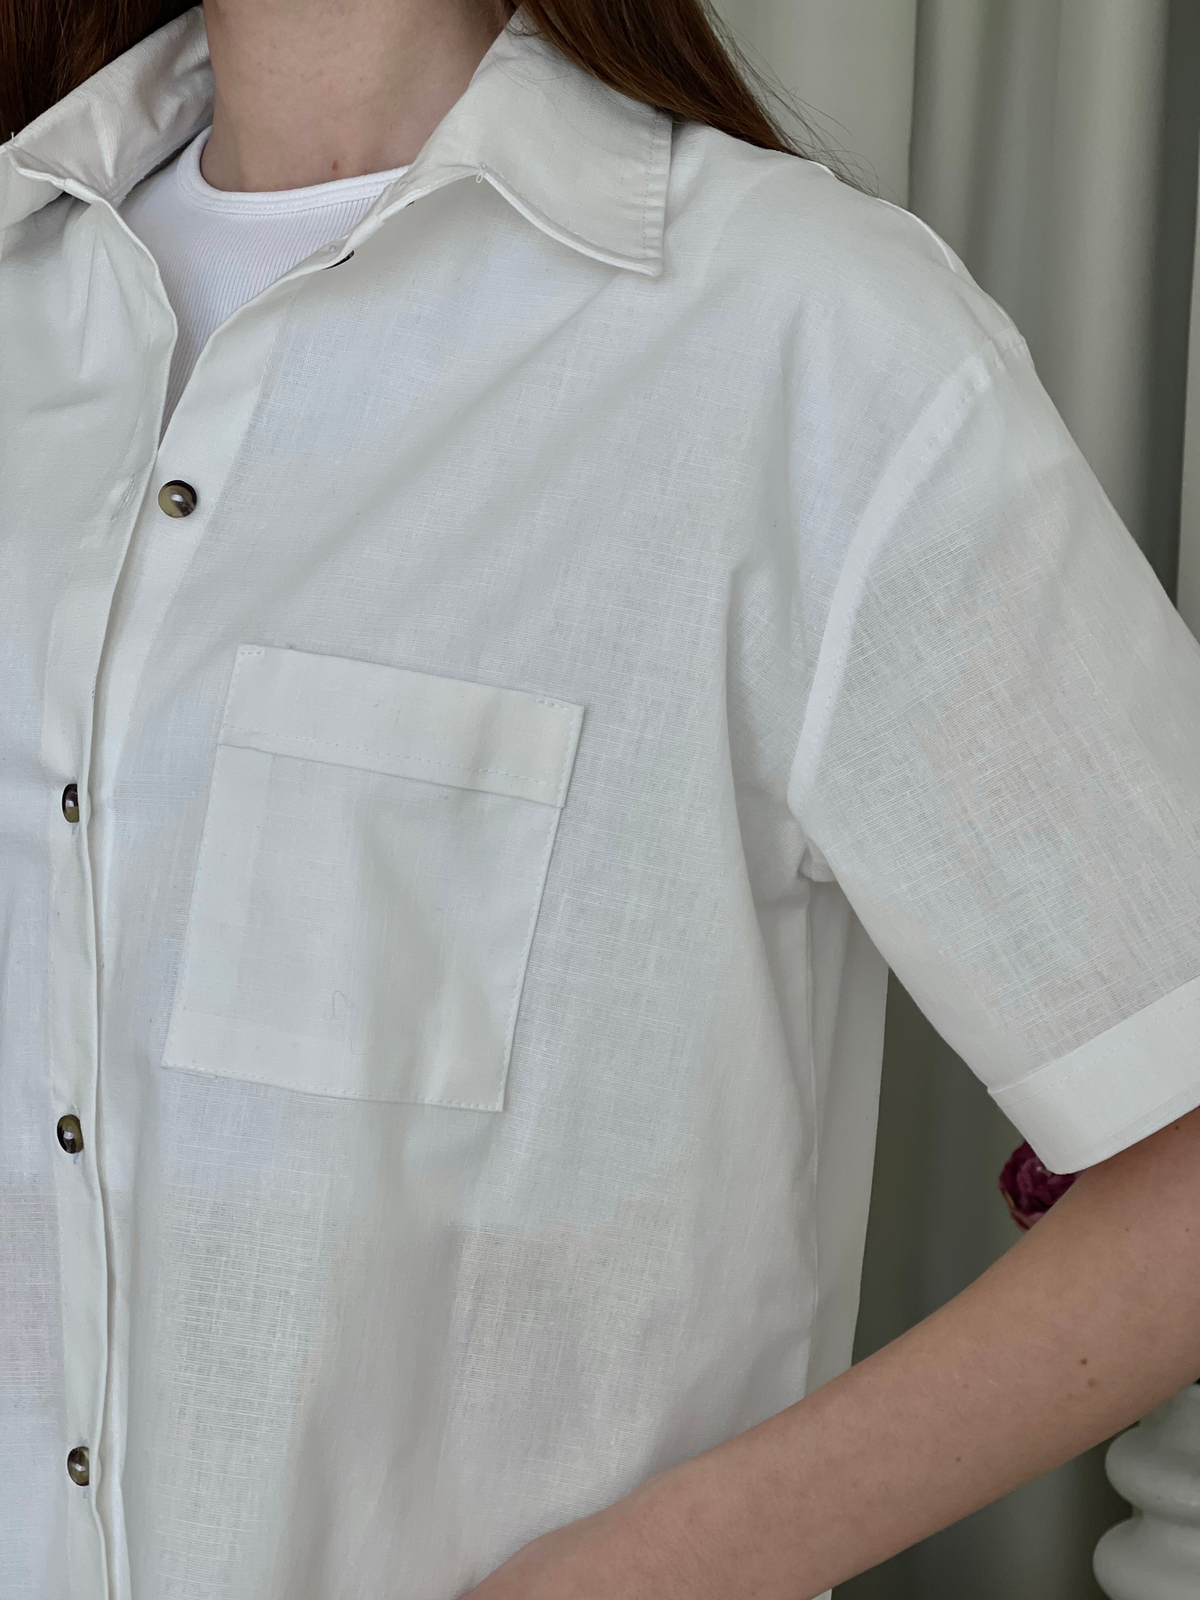 Купить Льняной костюм с штанами палаццо и рубашкой белый Лорен 100001202 размер 42-44 (S-M) в интернет-магазине